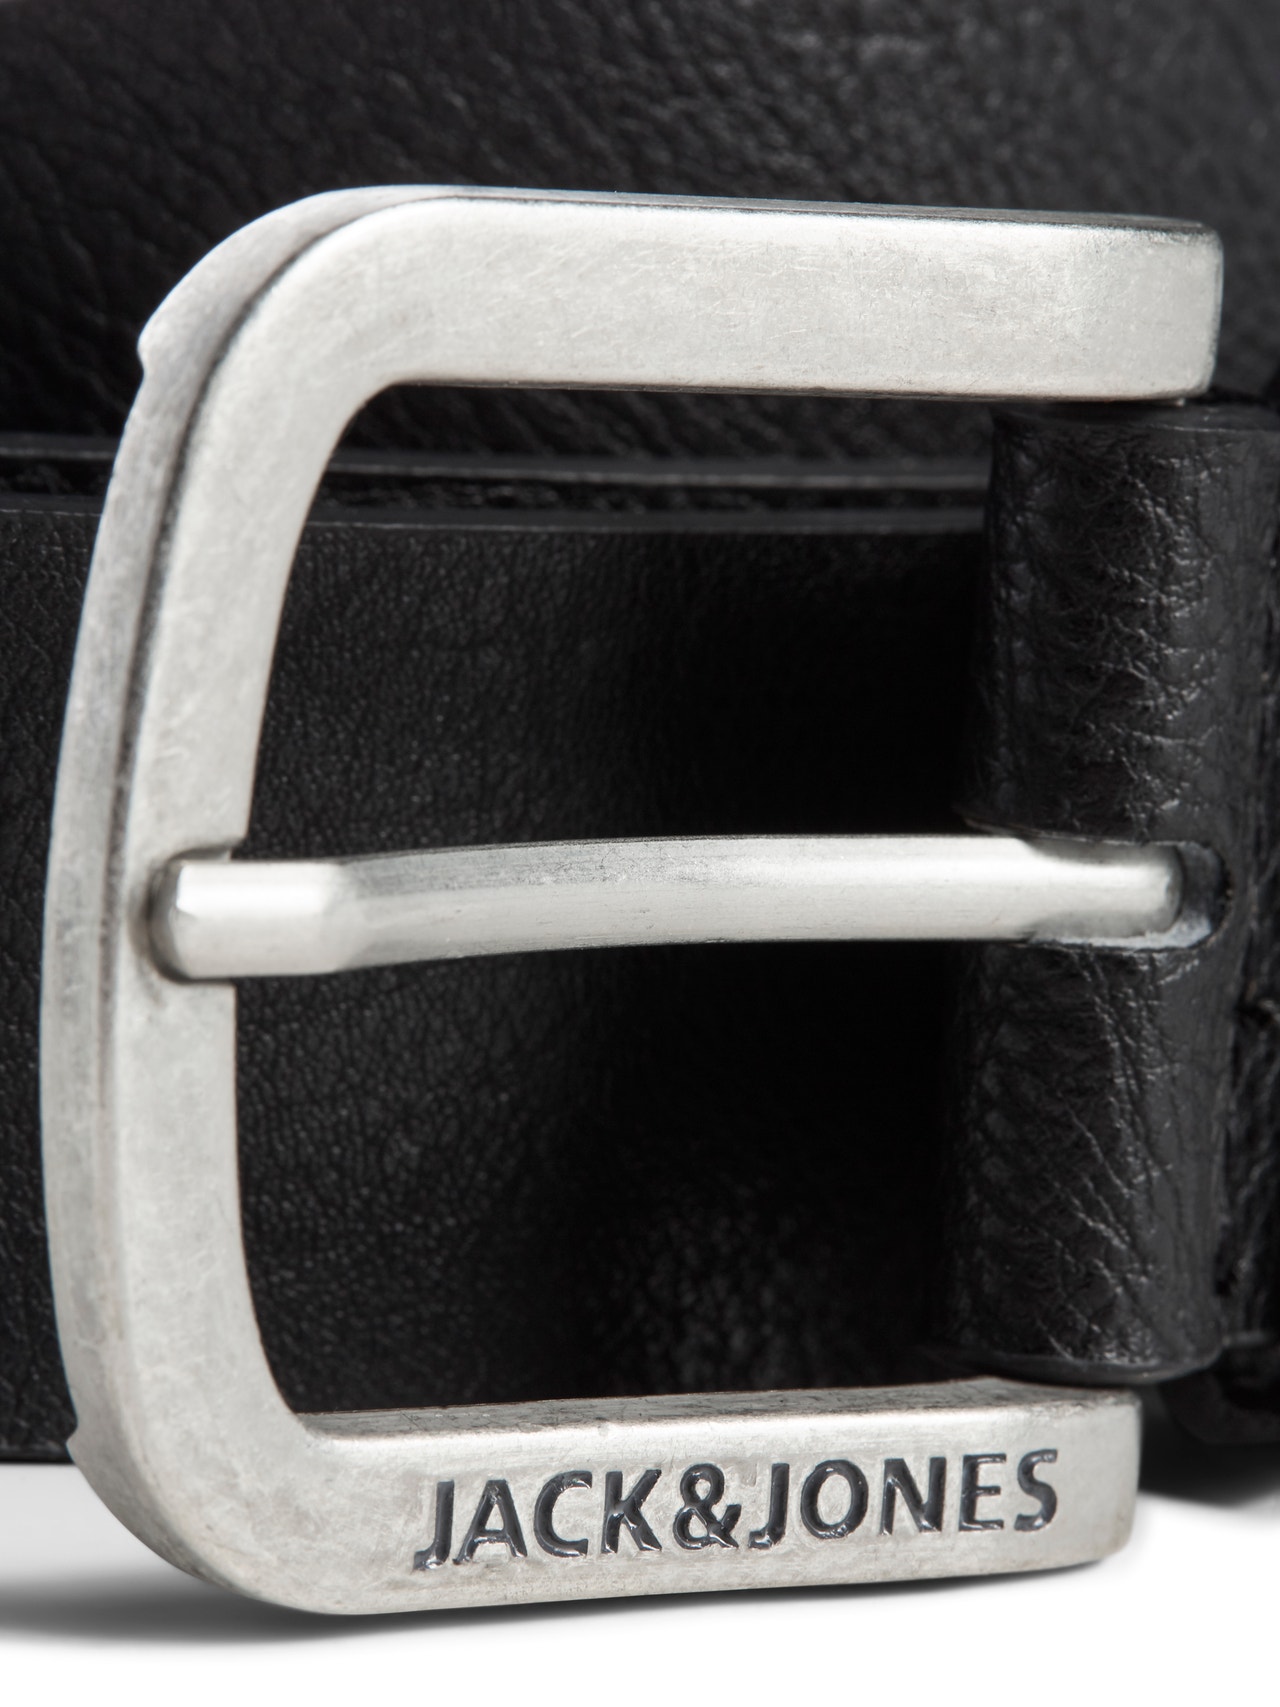 Jack & Jones Läderimitation Bälte -Black - 12120697